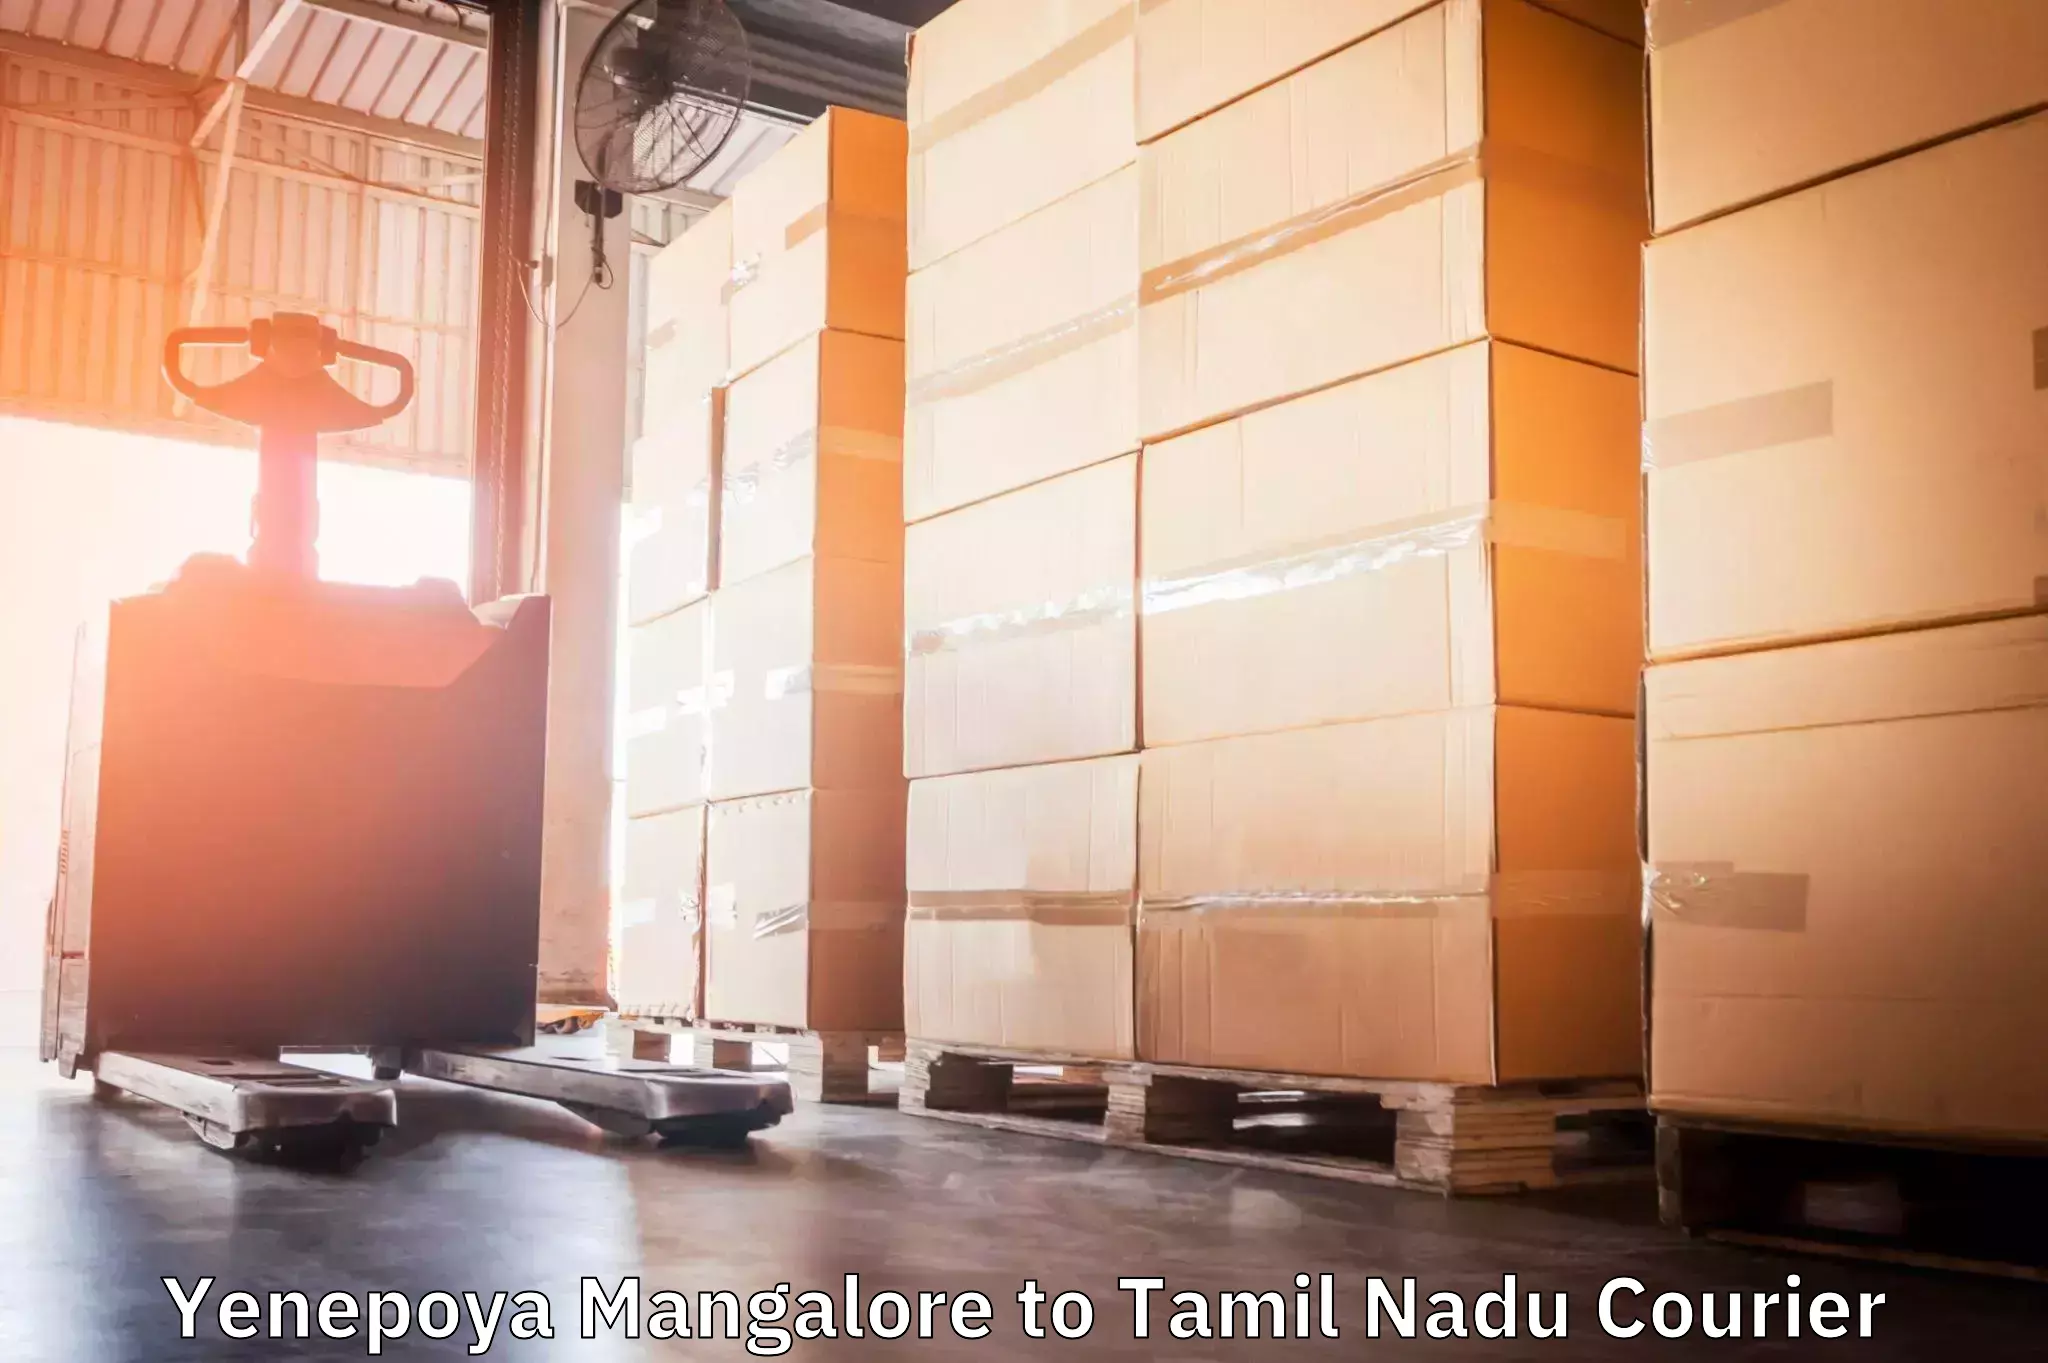 Professional courier services Yenepoya Mangalore to Udumalaipettai